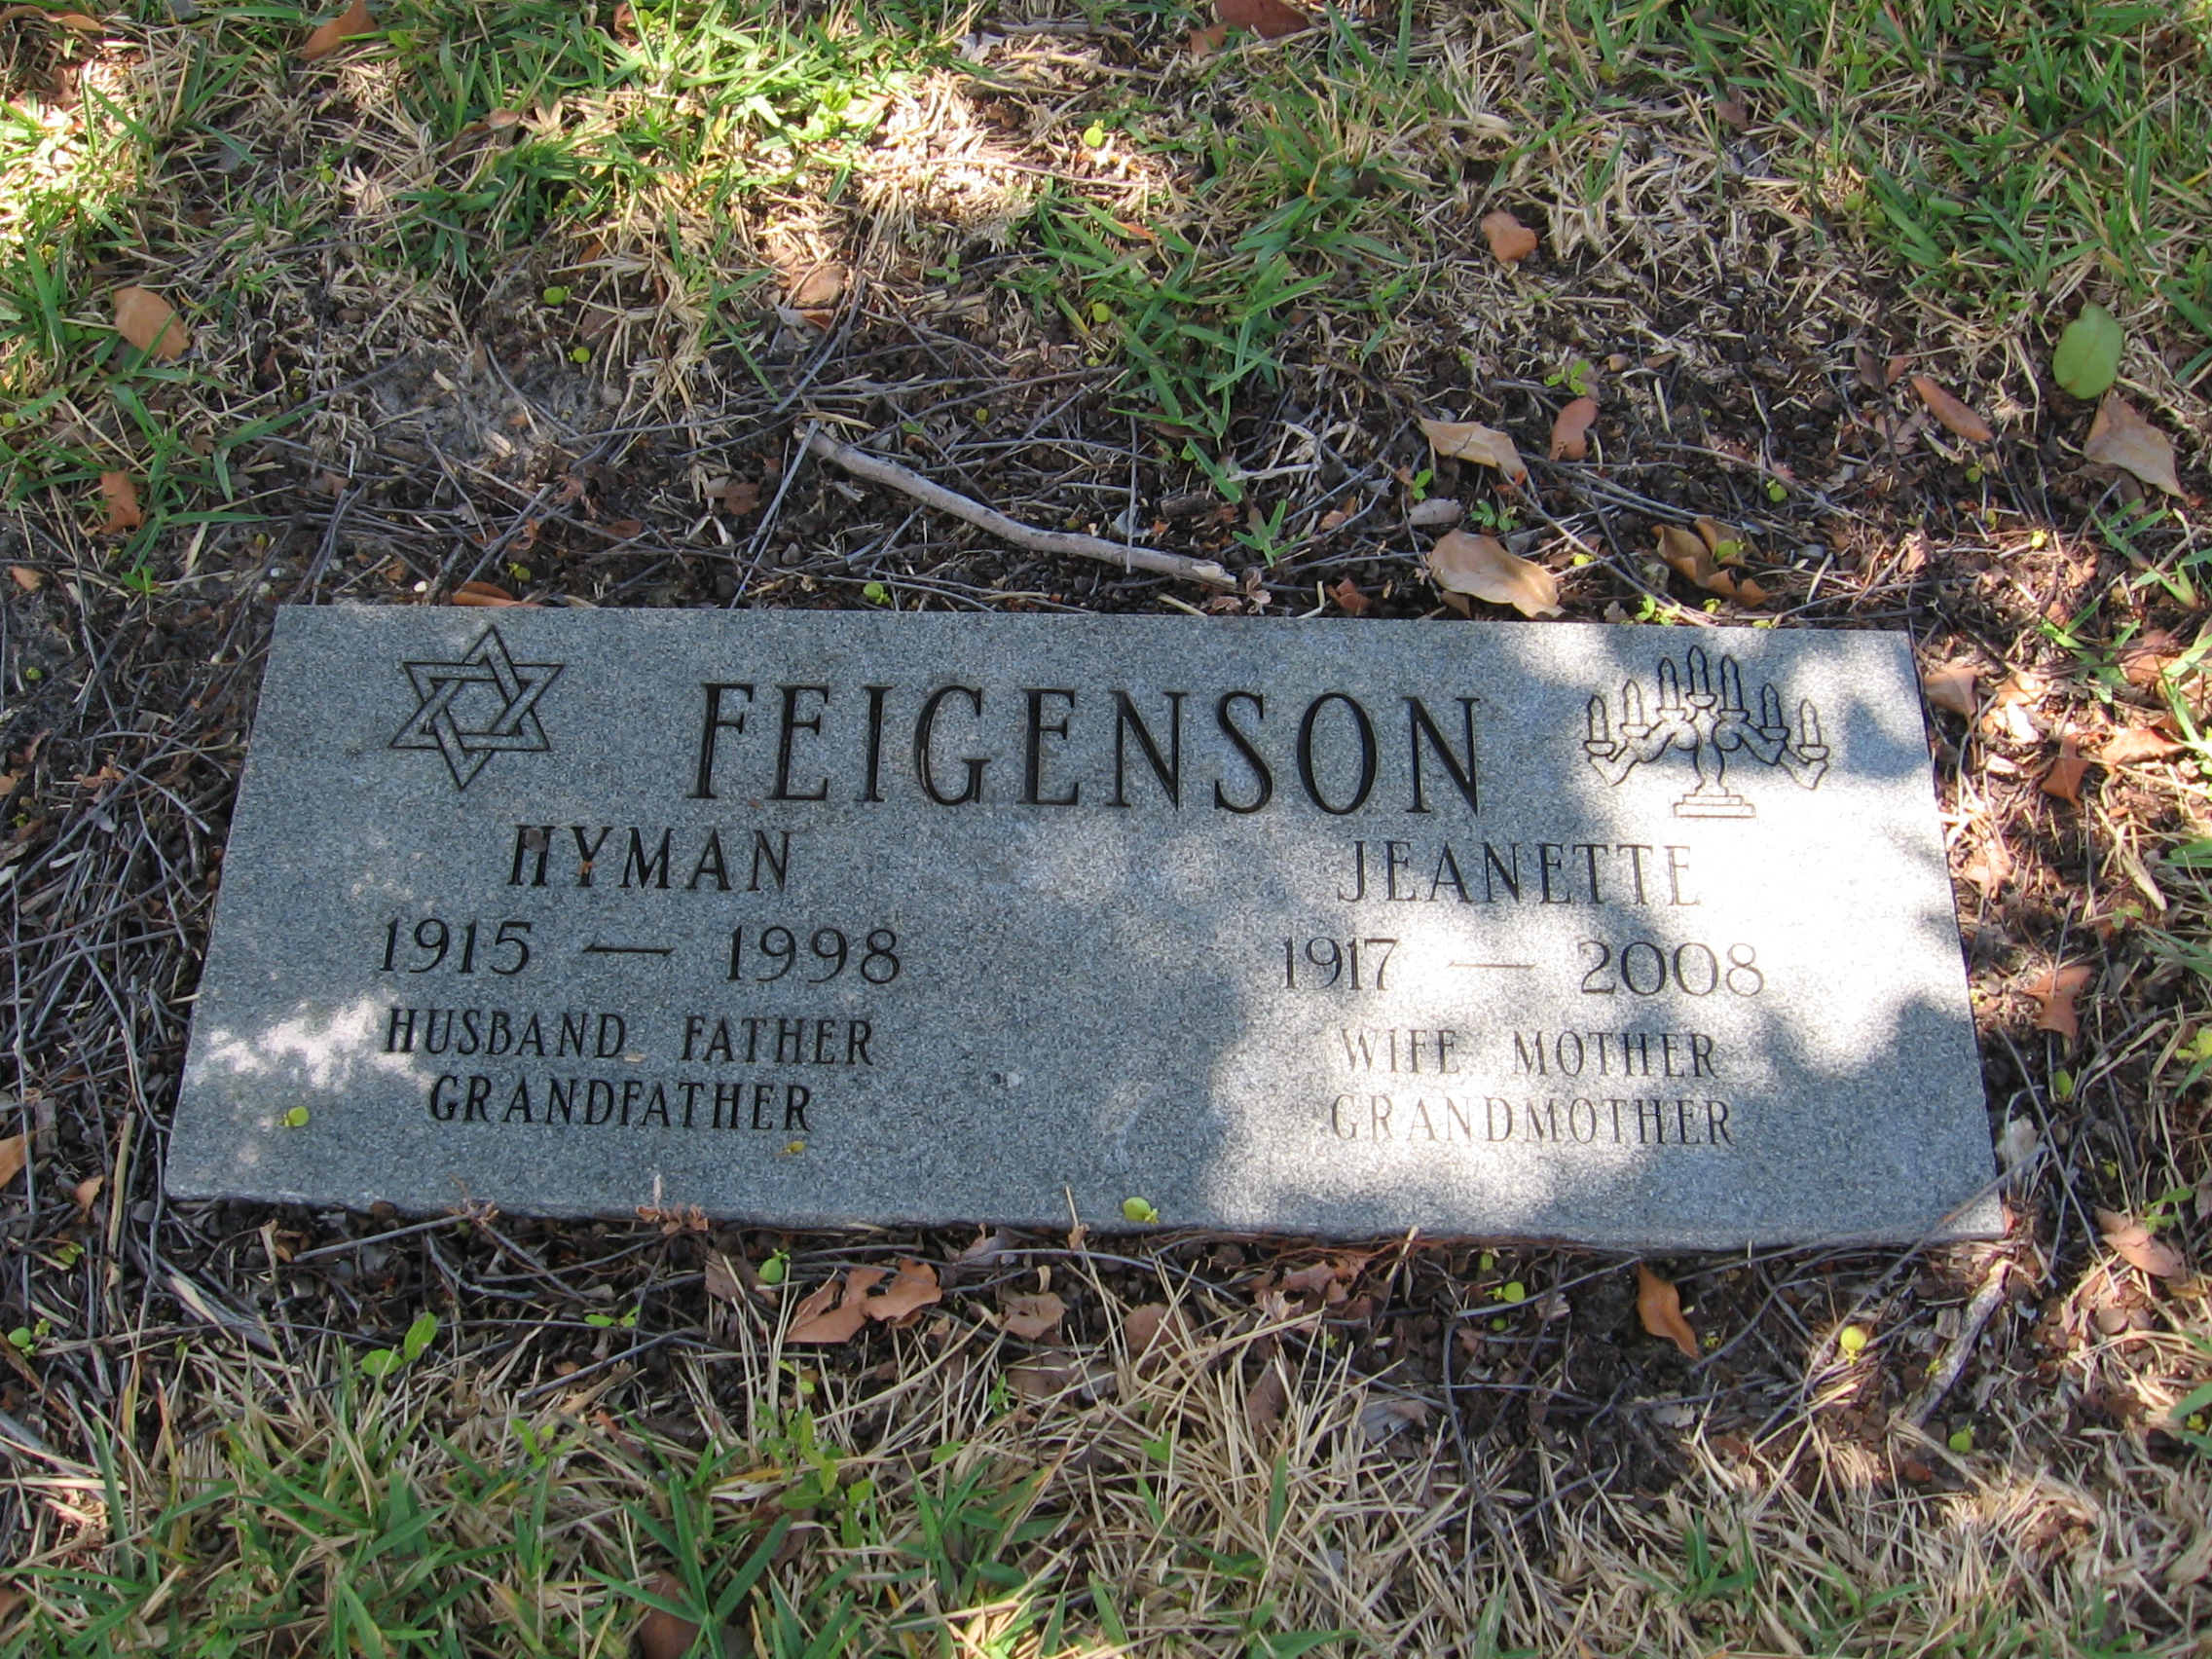 Hyman Feigenson